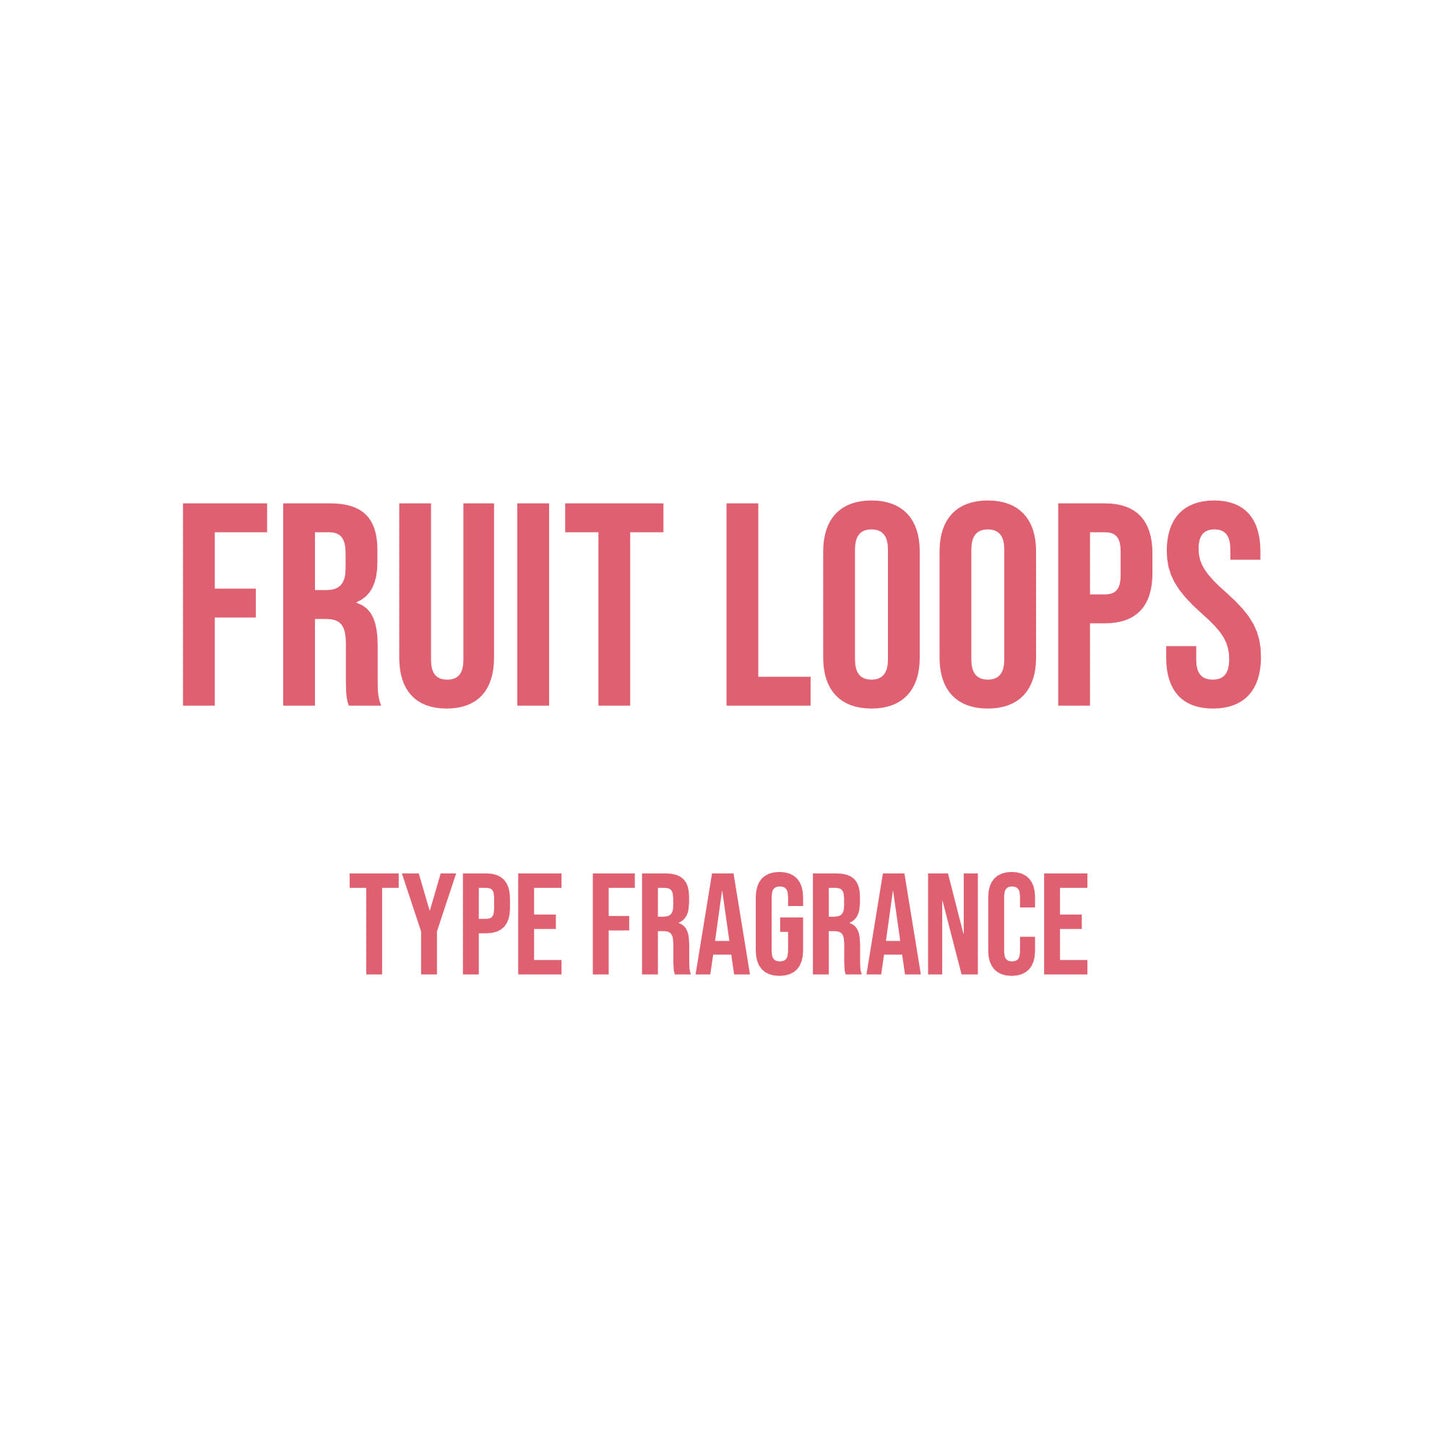 Fruit Loops Type Fragrance